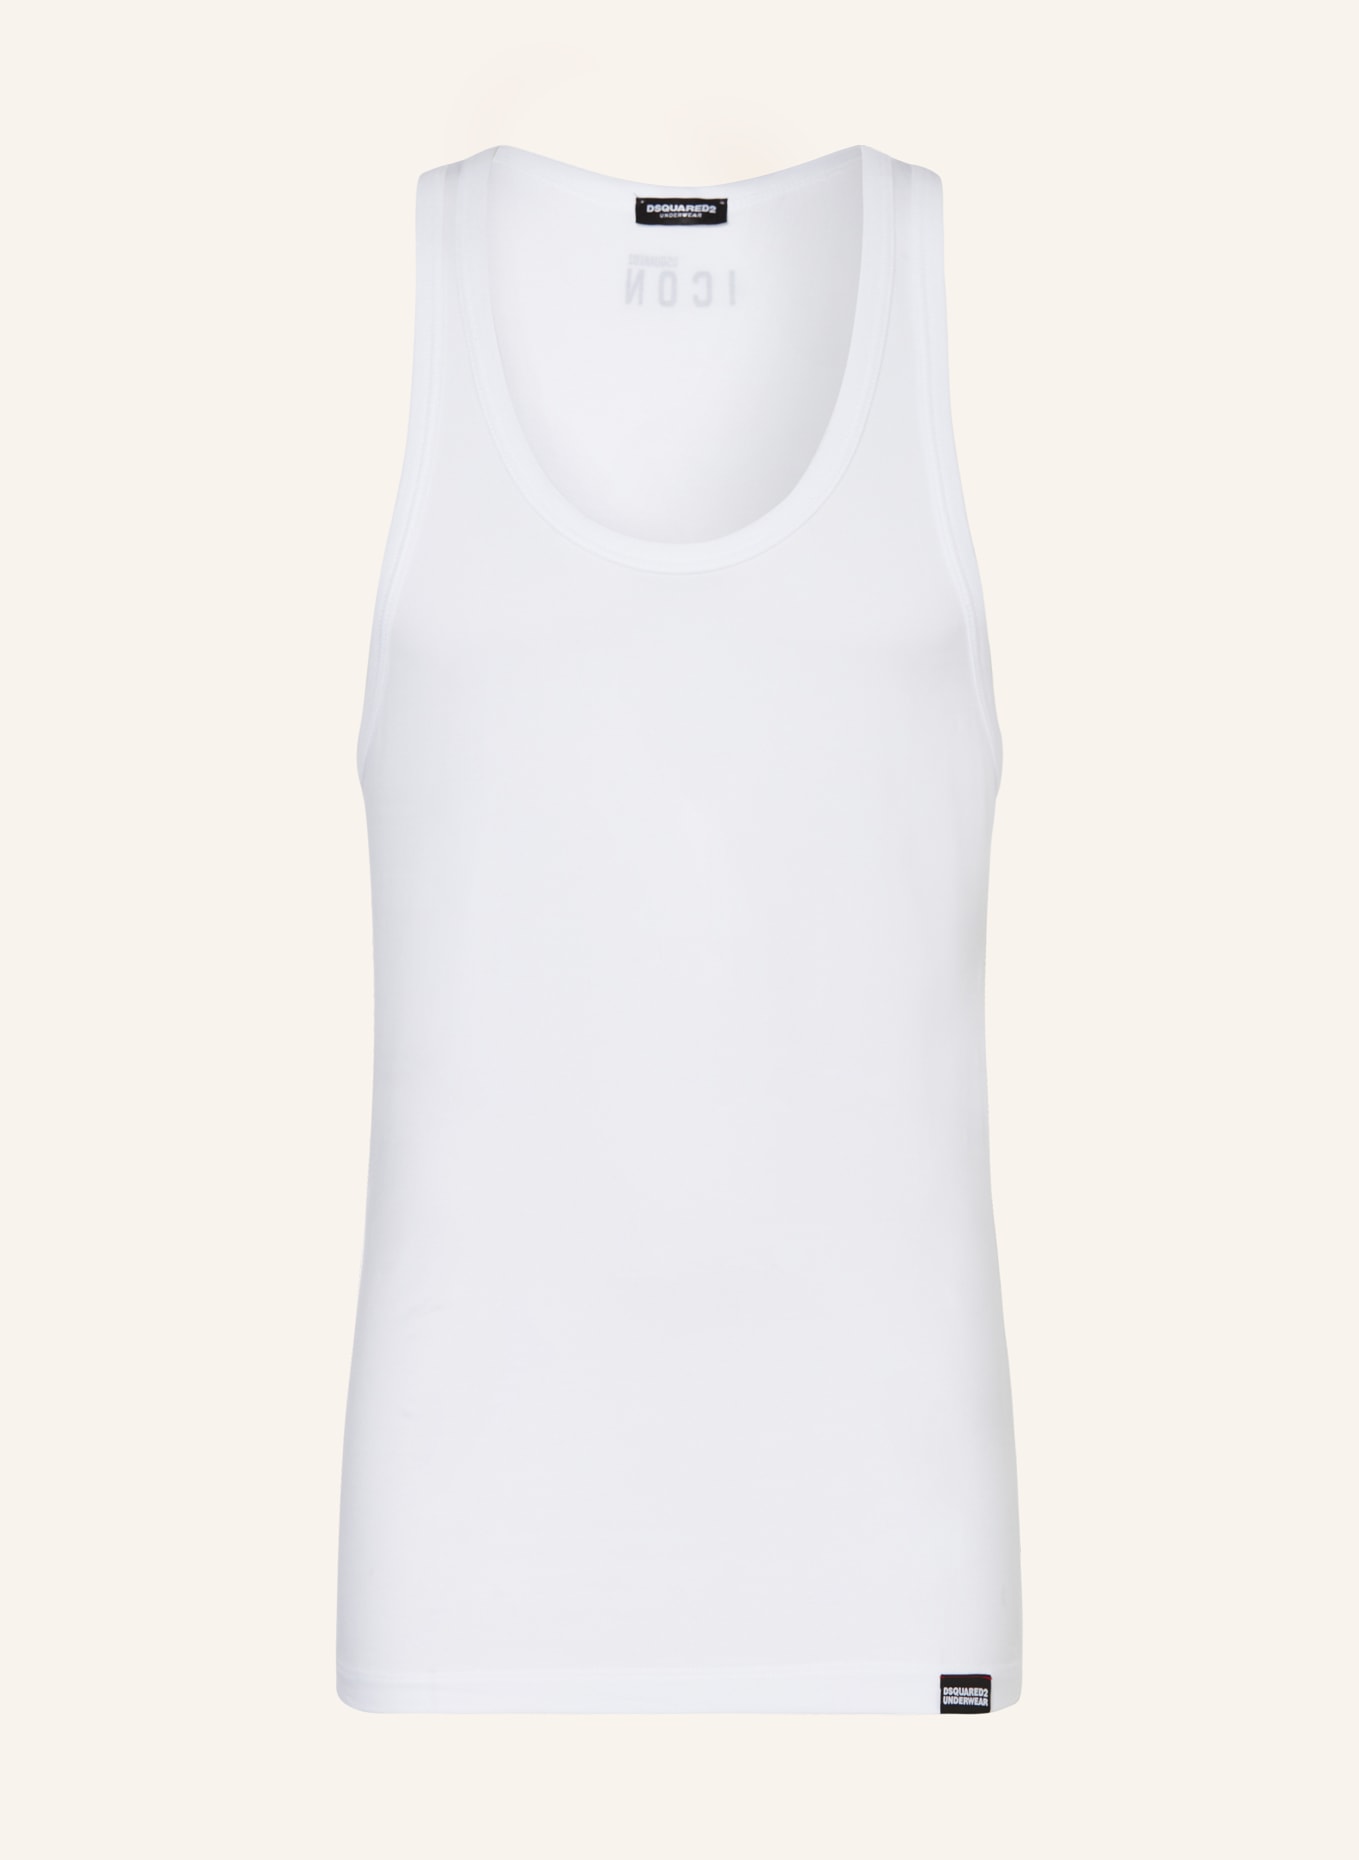 DSQUARED2 Unterhemd ICON, Farbe: WEISS (Bild 1)